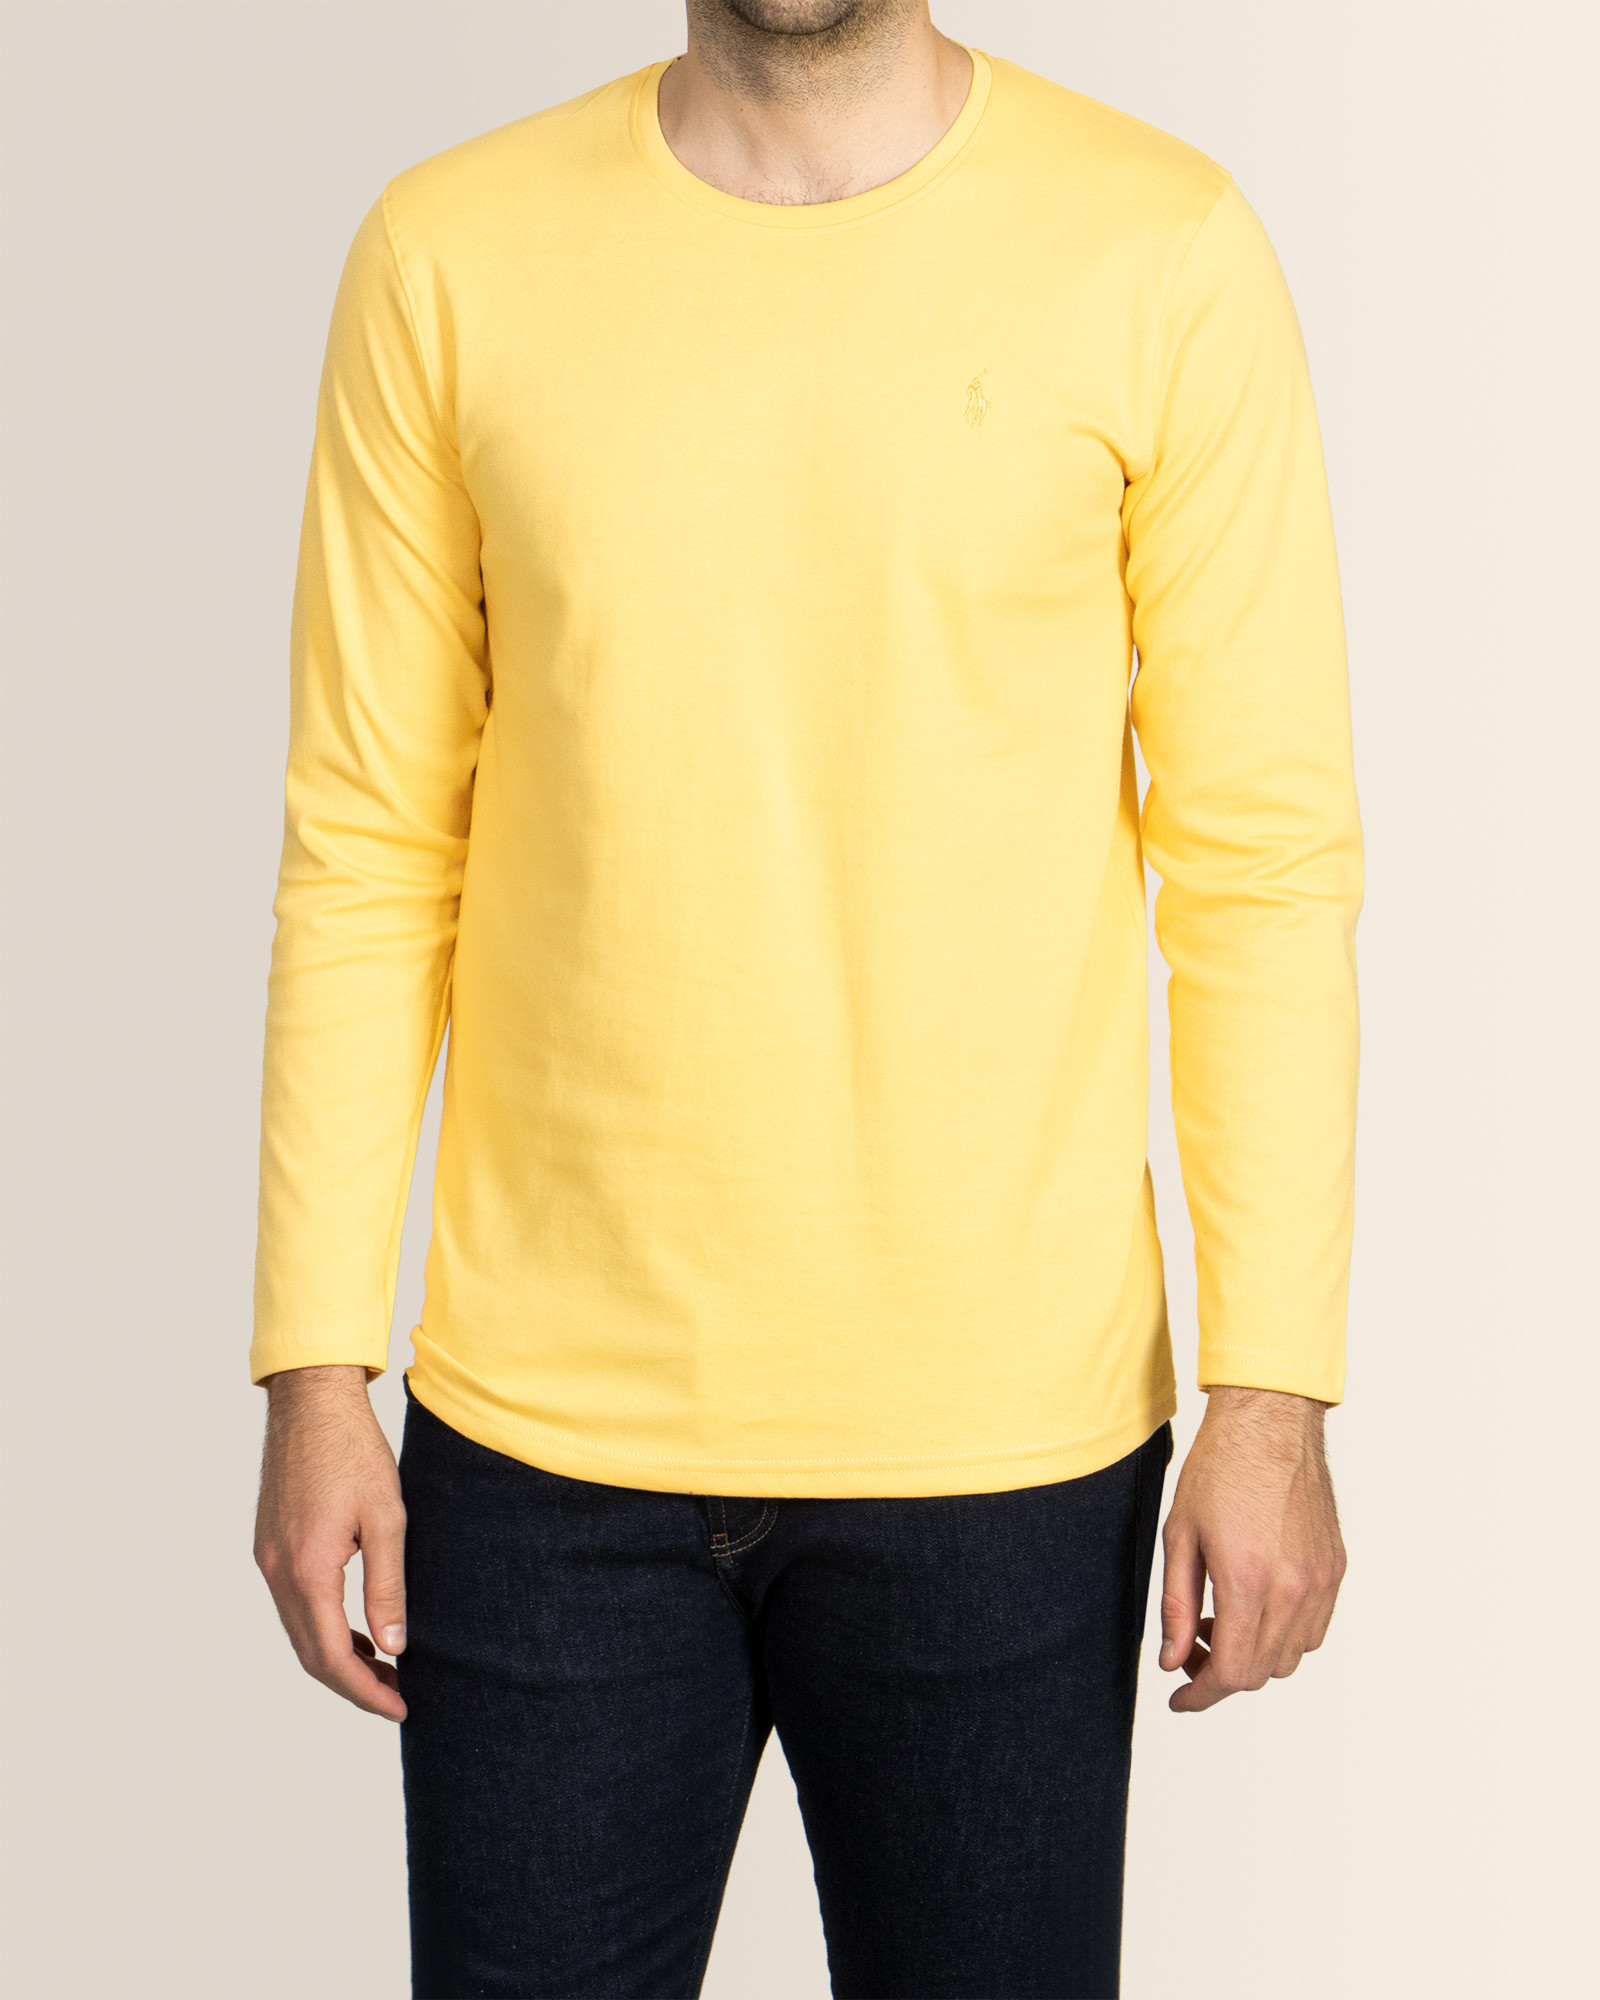 خرید اینترنتی تیشرت آستین بلند مردانه زرد 19328114